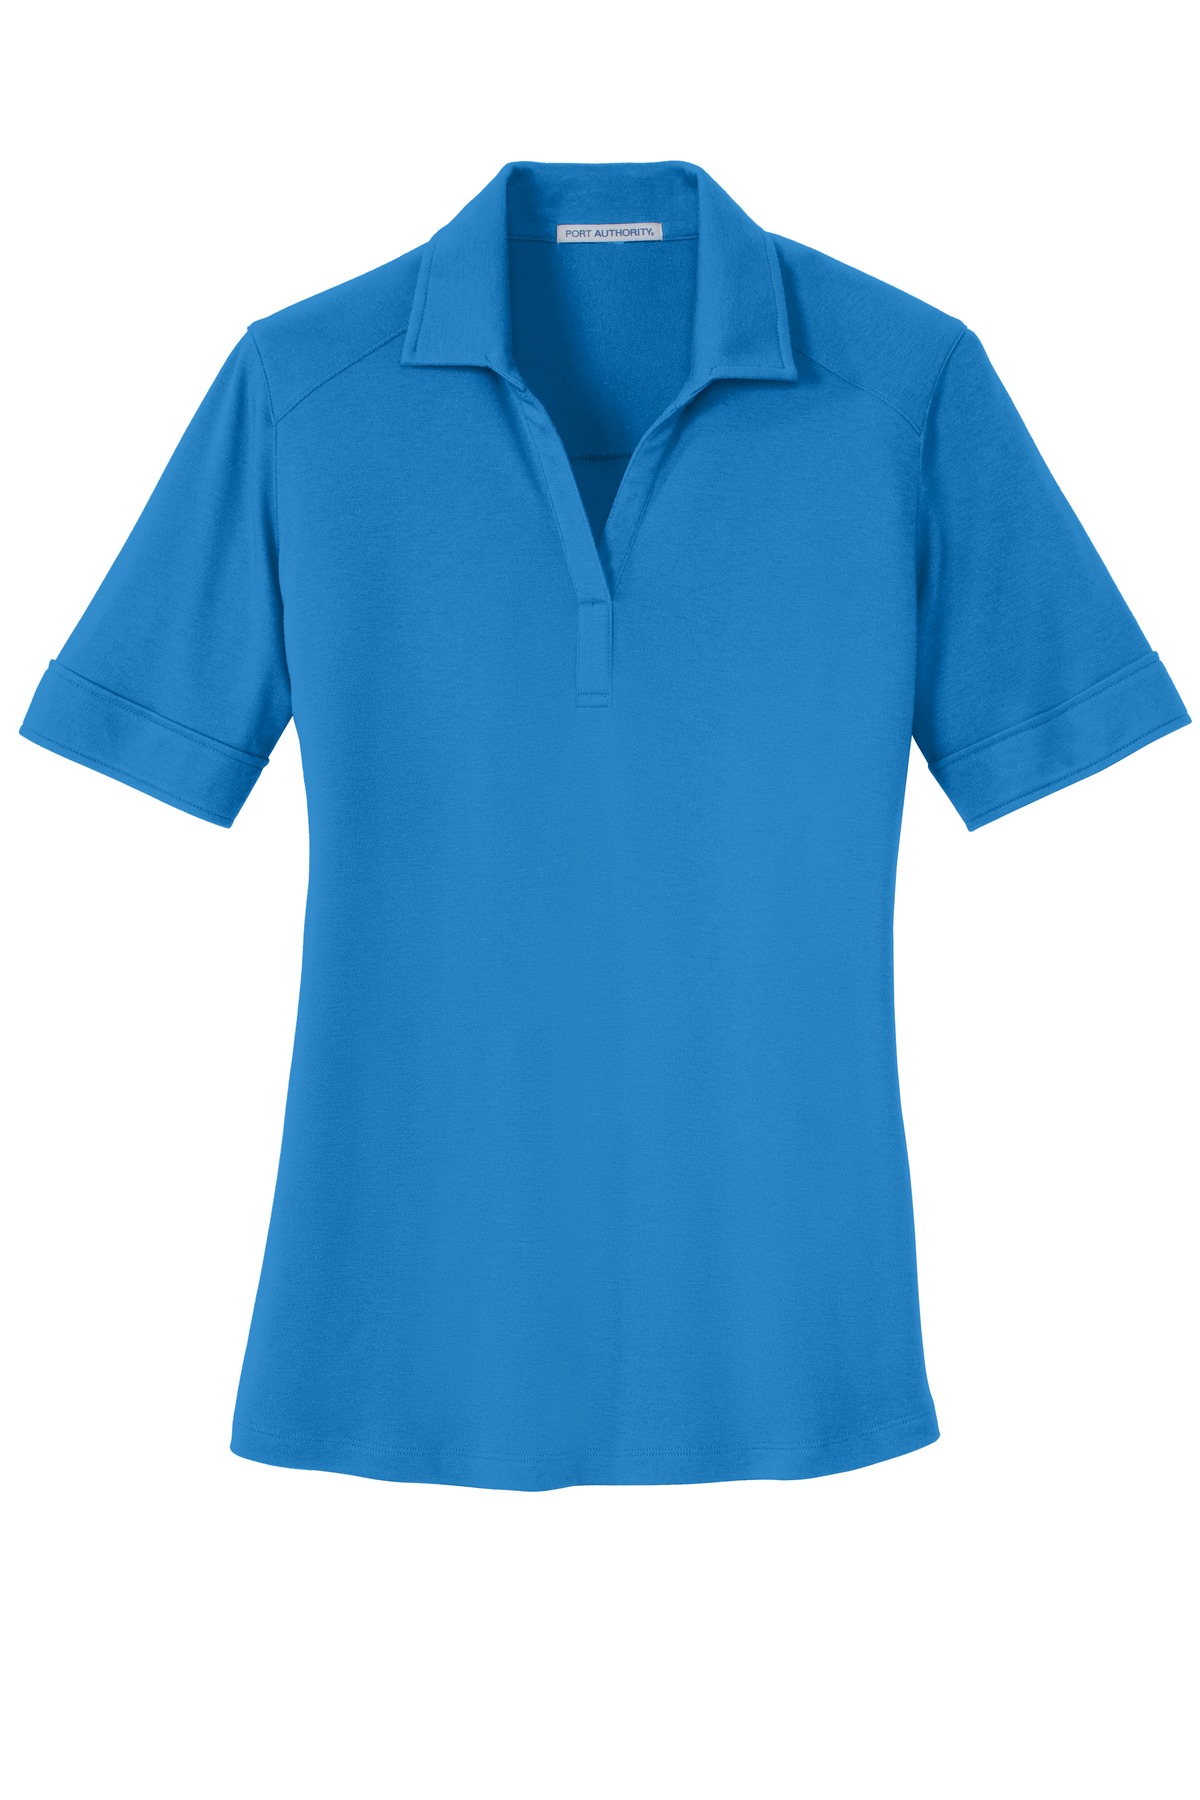 Port Authority Adult Female Women Plain Short Sleeves Polo Brilliant Blue Large - image 5 of 6